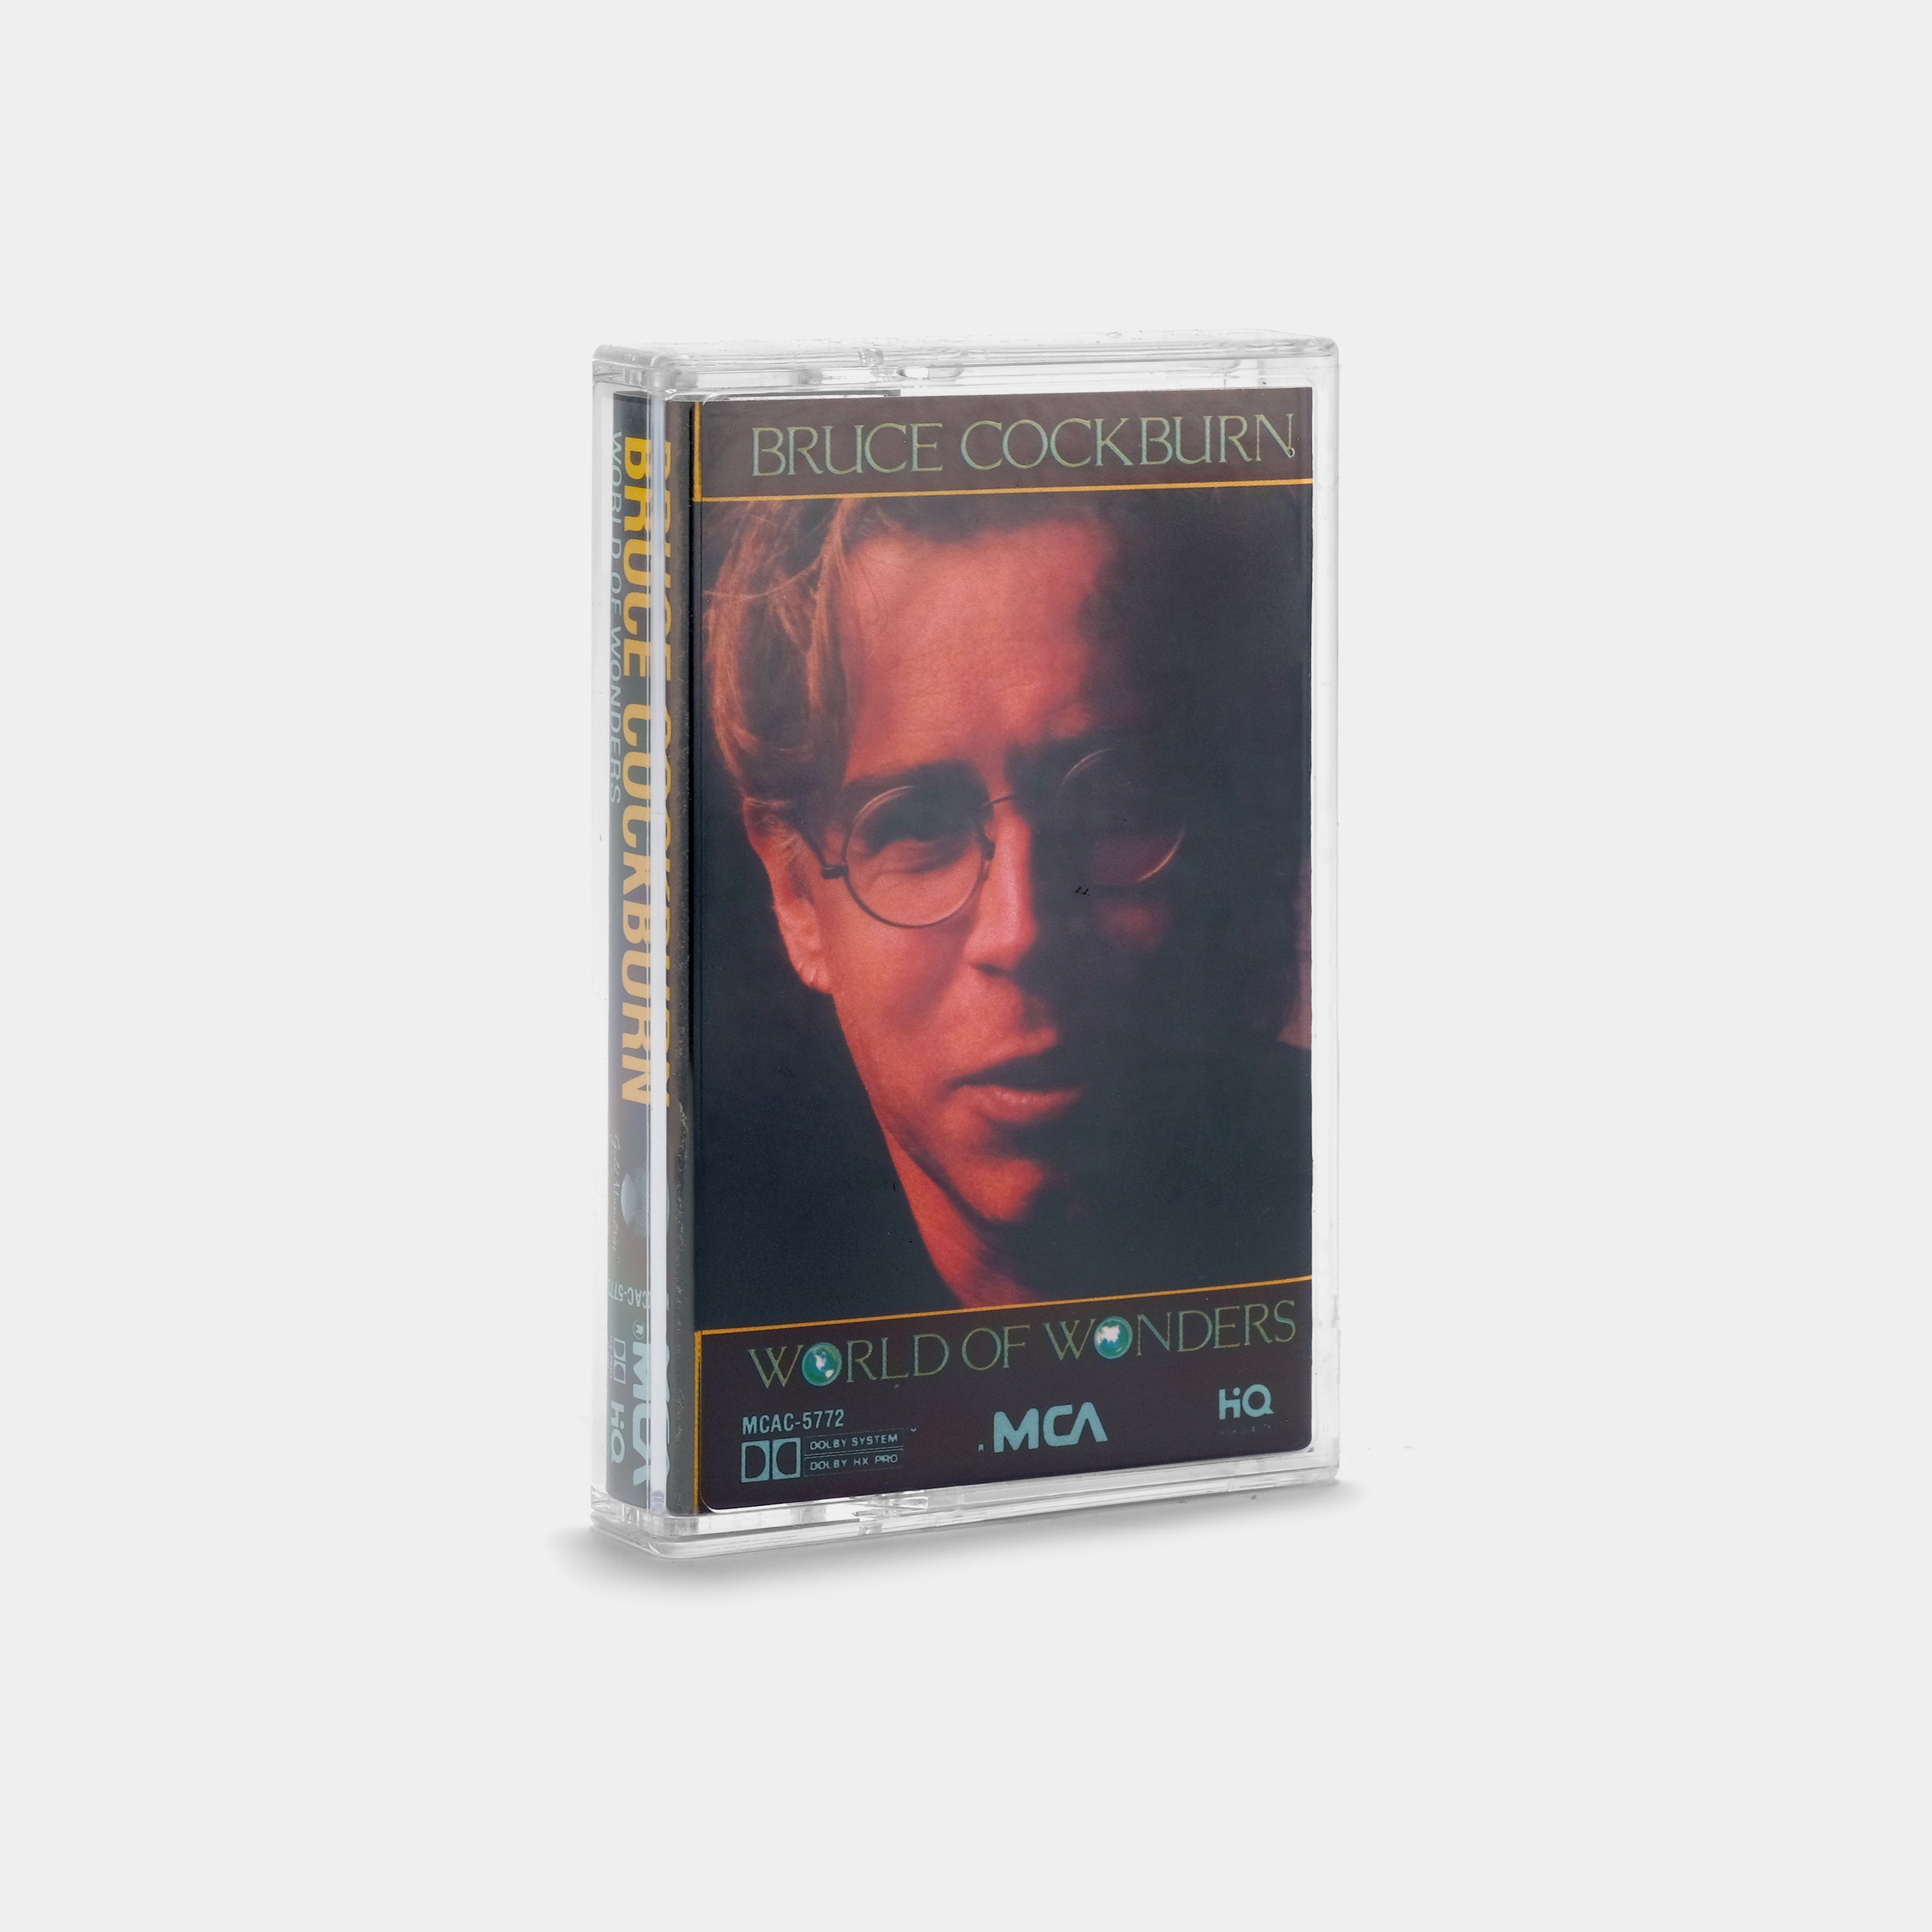 Bruce Cockburn - World of Wonders Cassette Tape